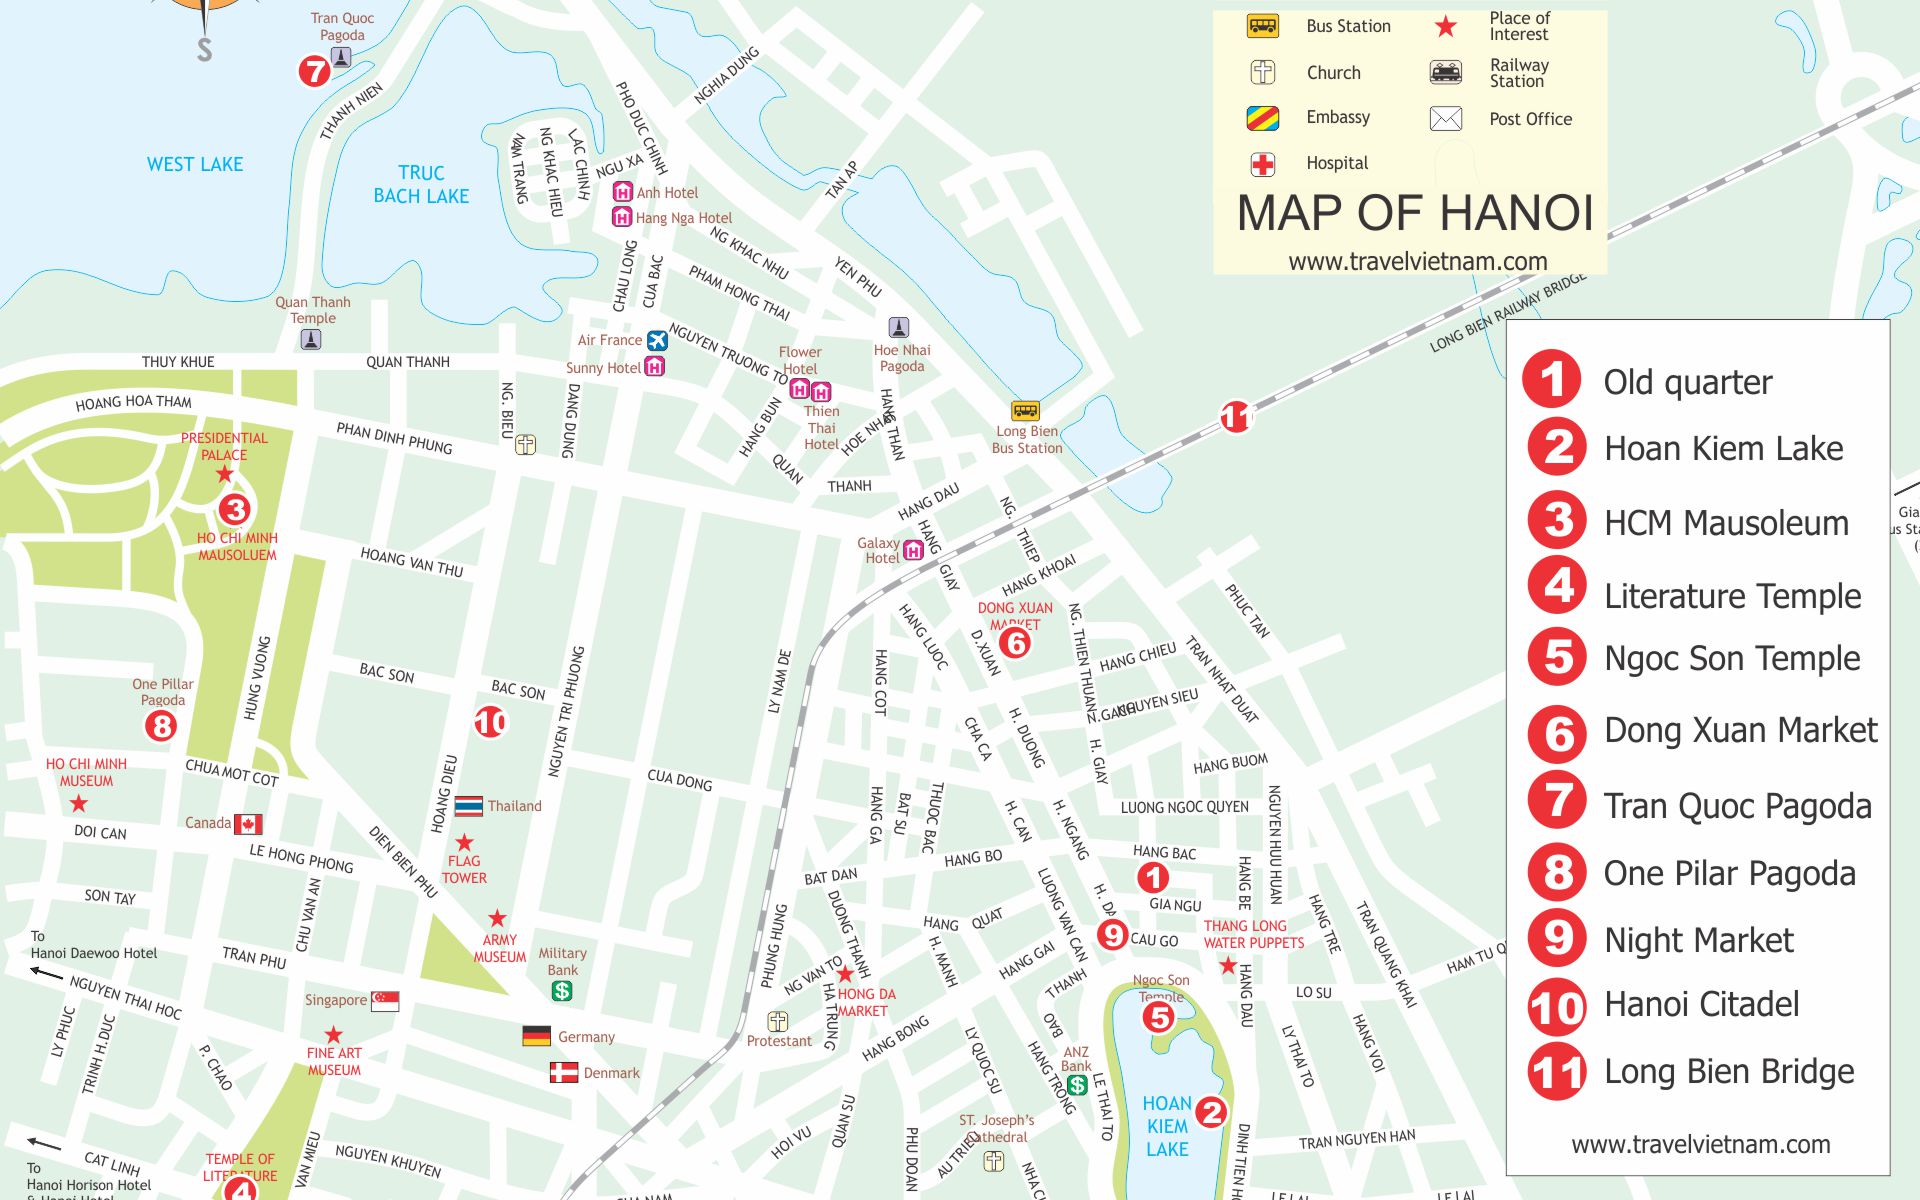 Hanoi Travel Map TravelVietnam 4a8e5 